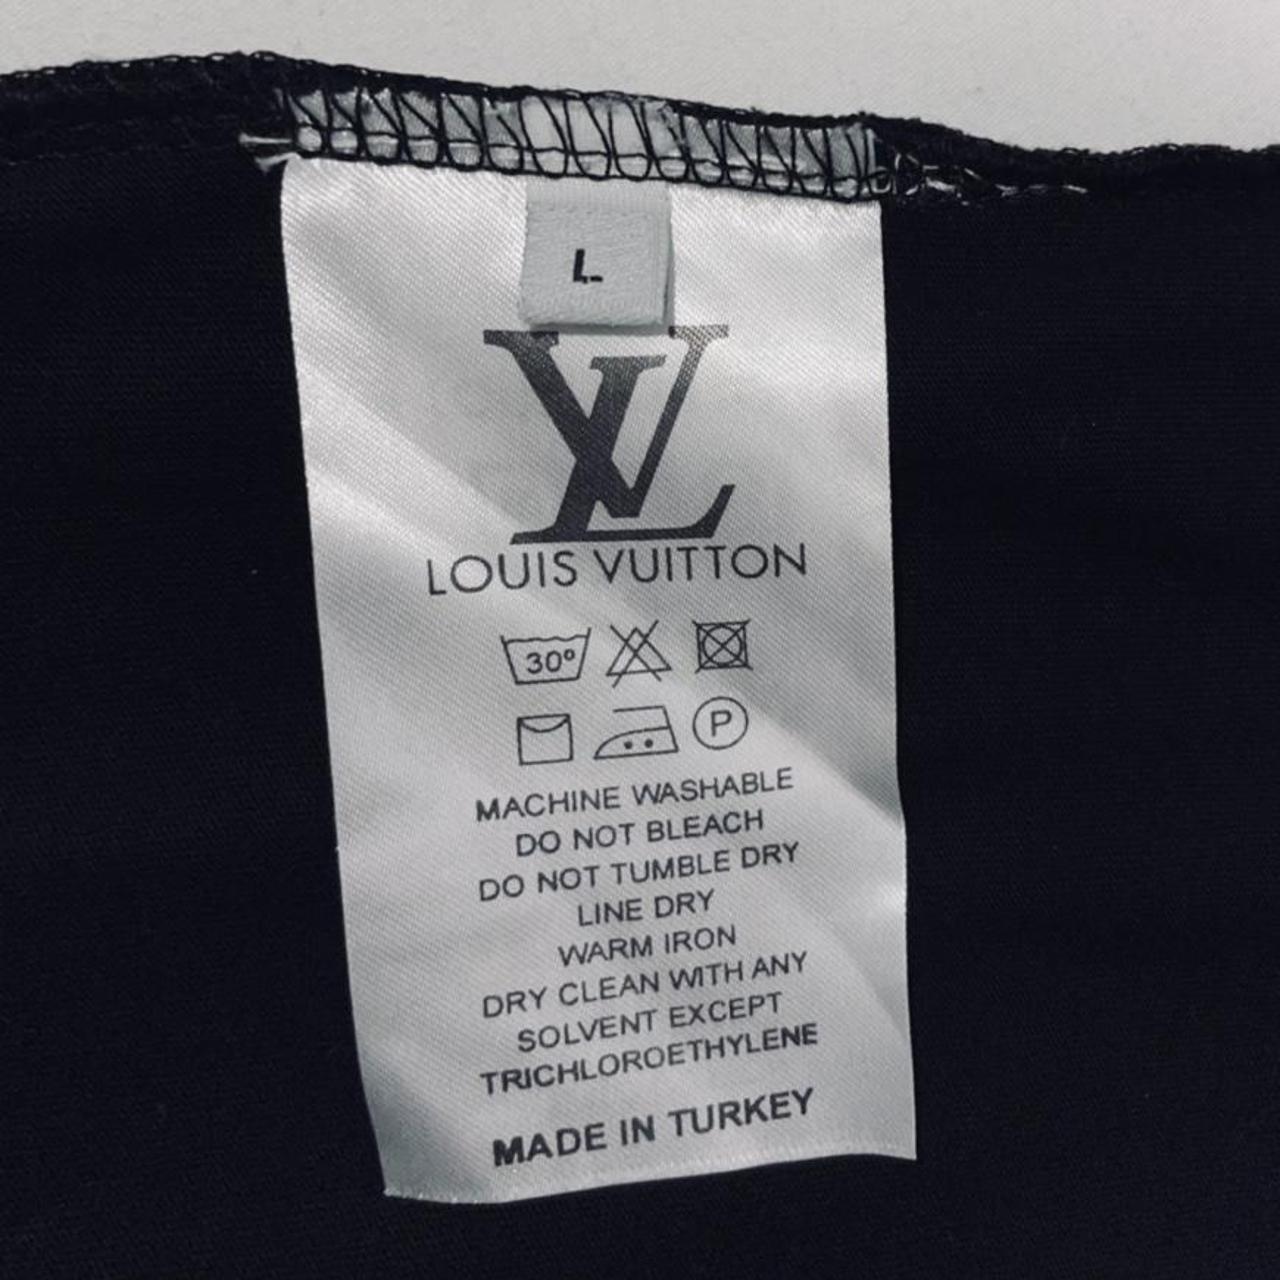 Louis Vuitton Rainbow Shirt Worn a dozen times - Depop